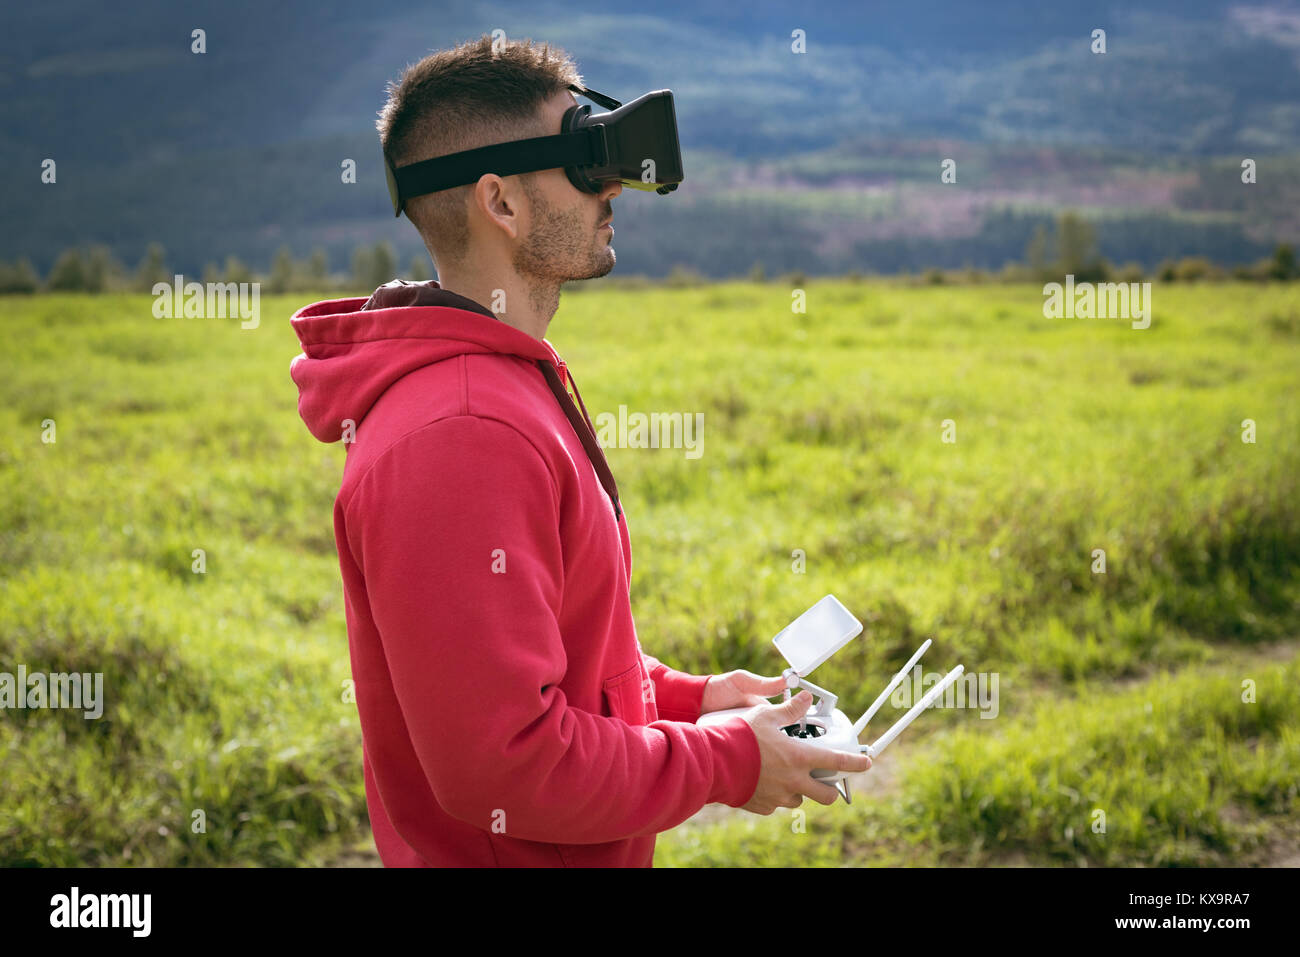 El hombre llevaba gafas de realidad virtual y control de drone Foto de stock